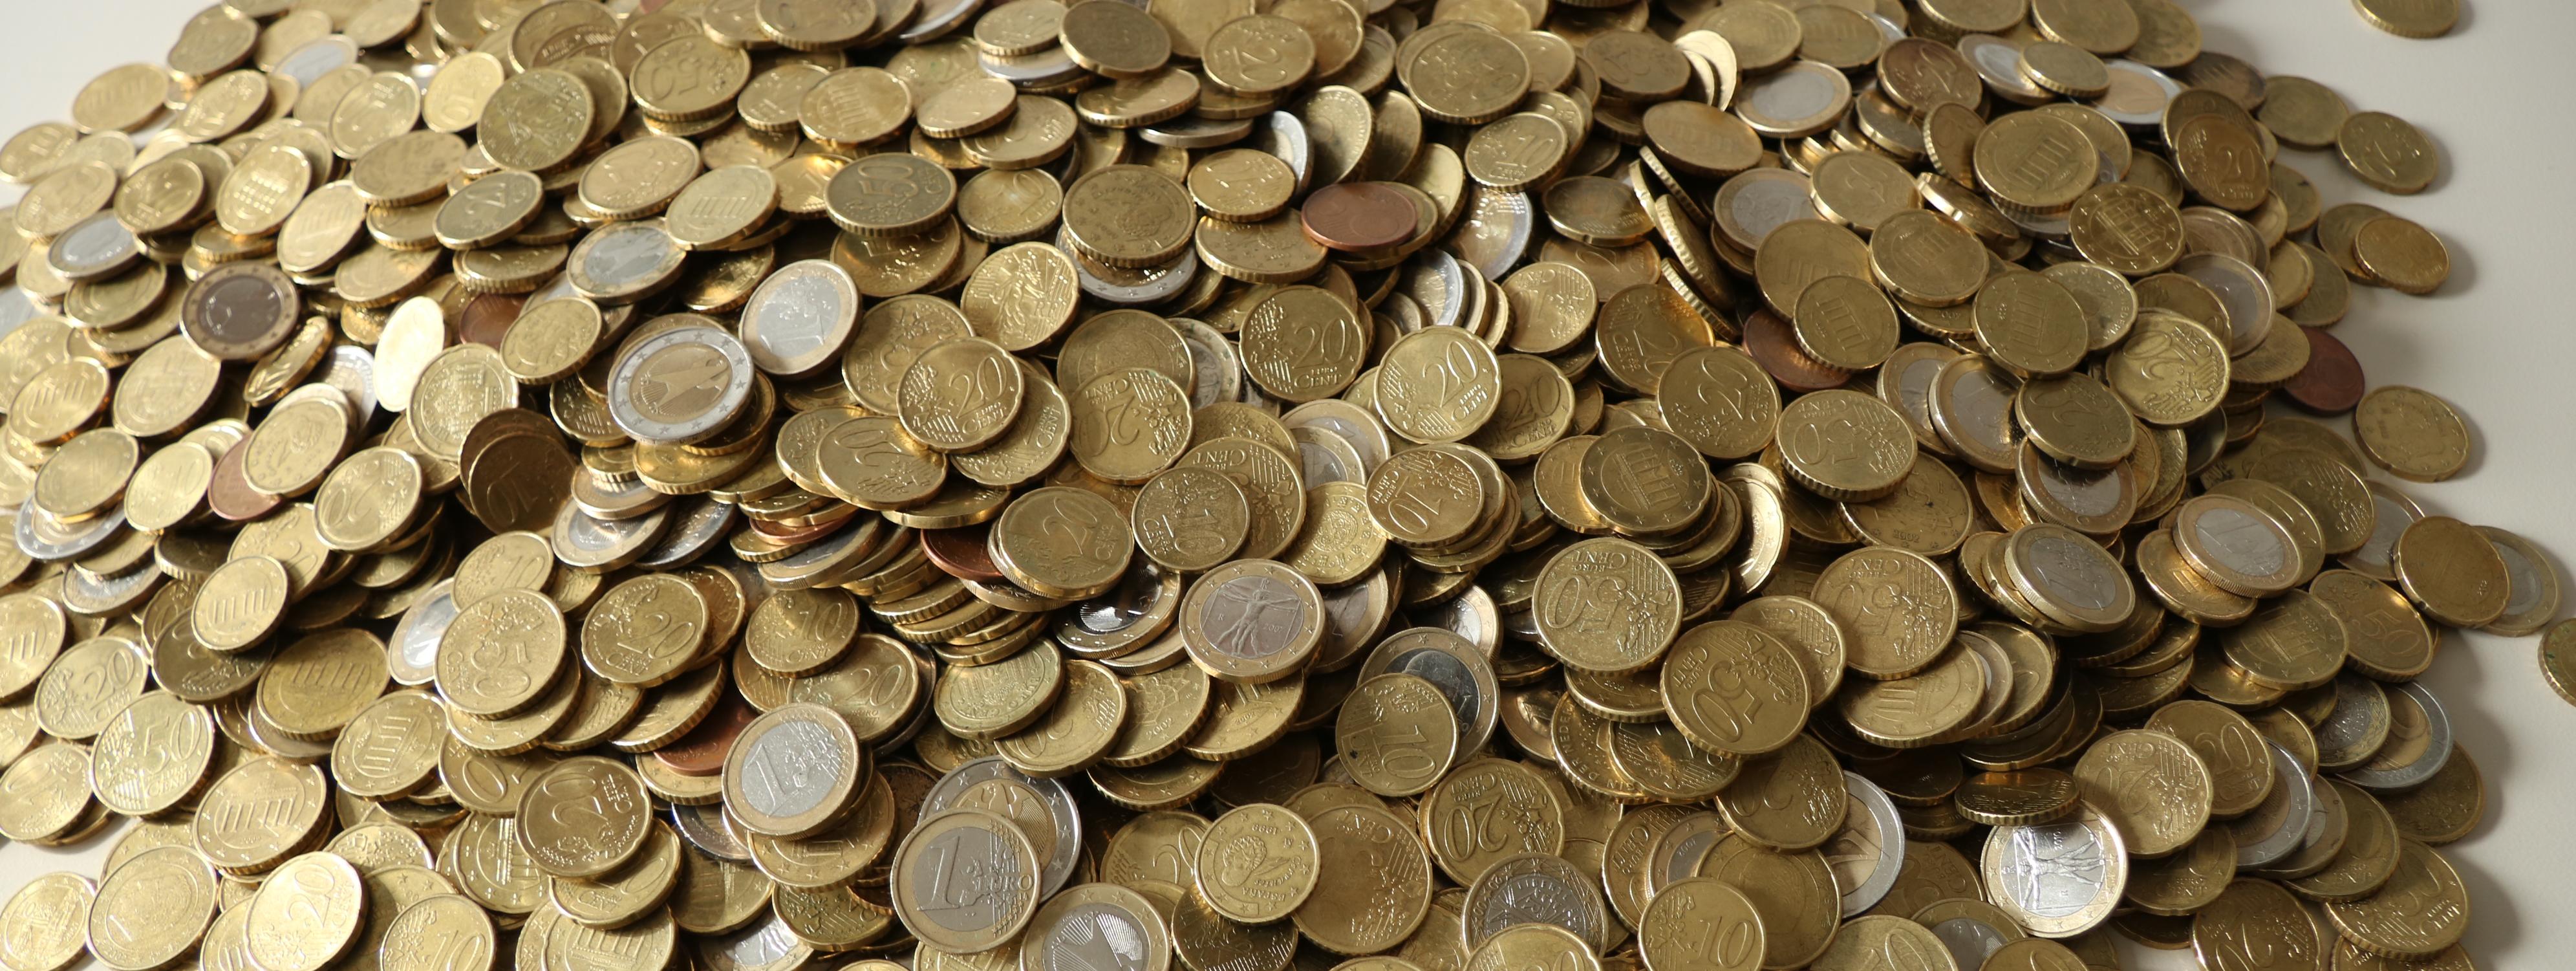 Auf einem weißen Tisch liegen zahllose Euro-Münzen auf einem großen Haufen.